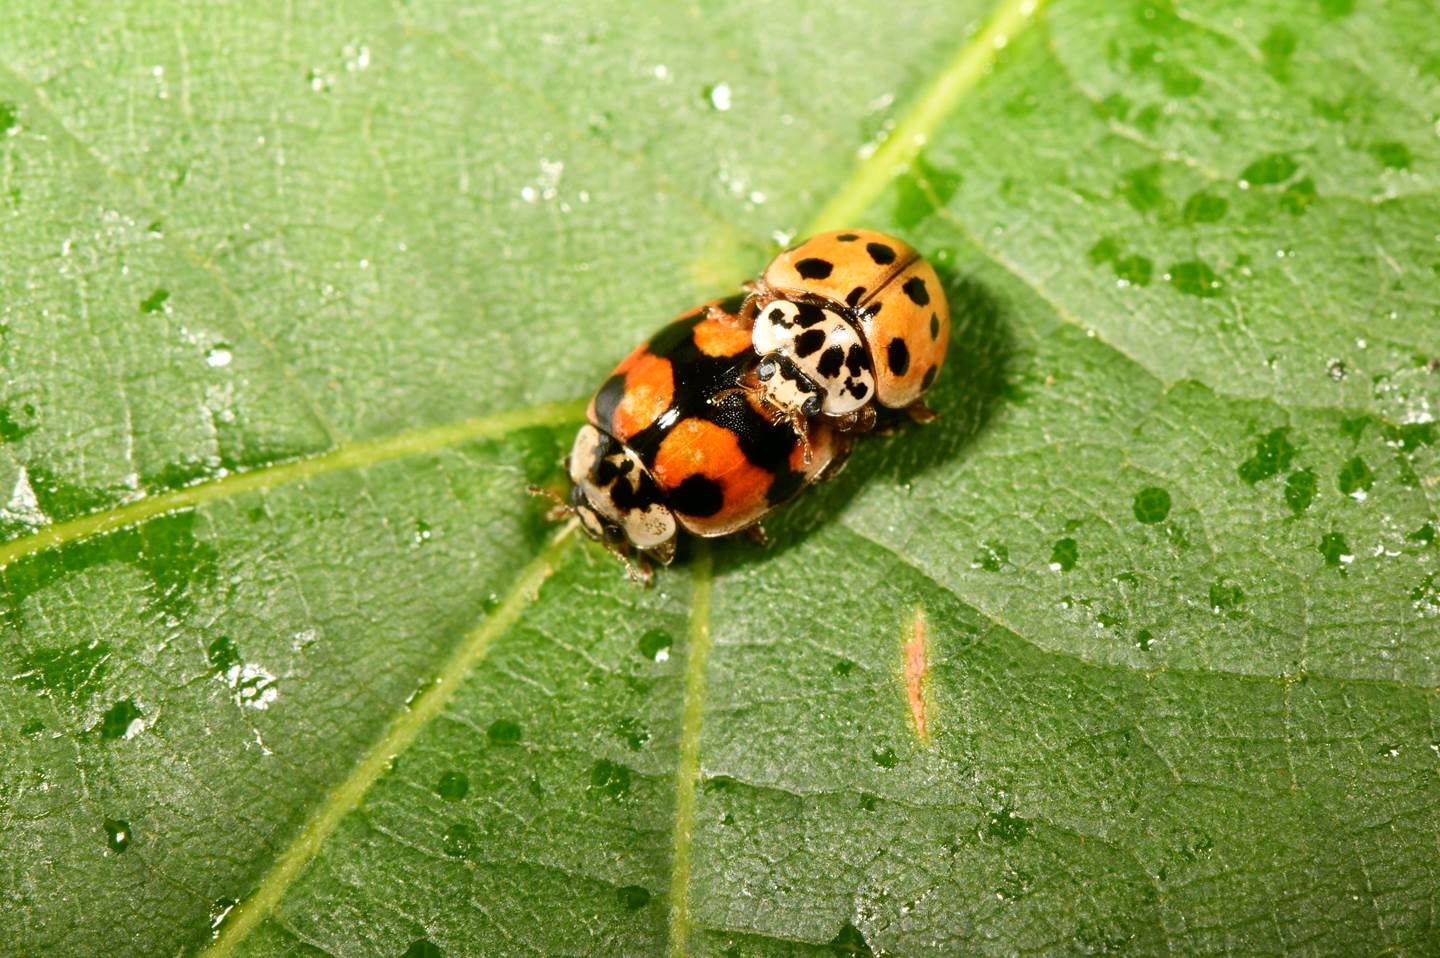 A ladybug on a leaf

Description automatically generated